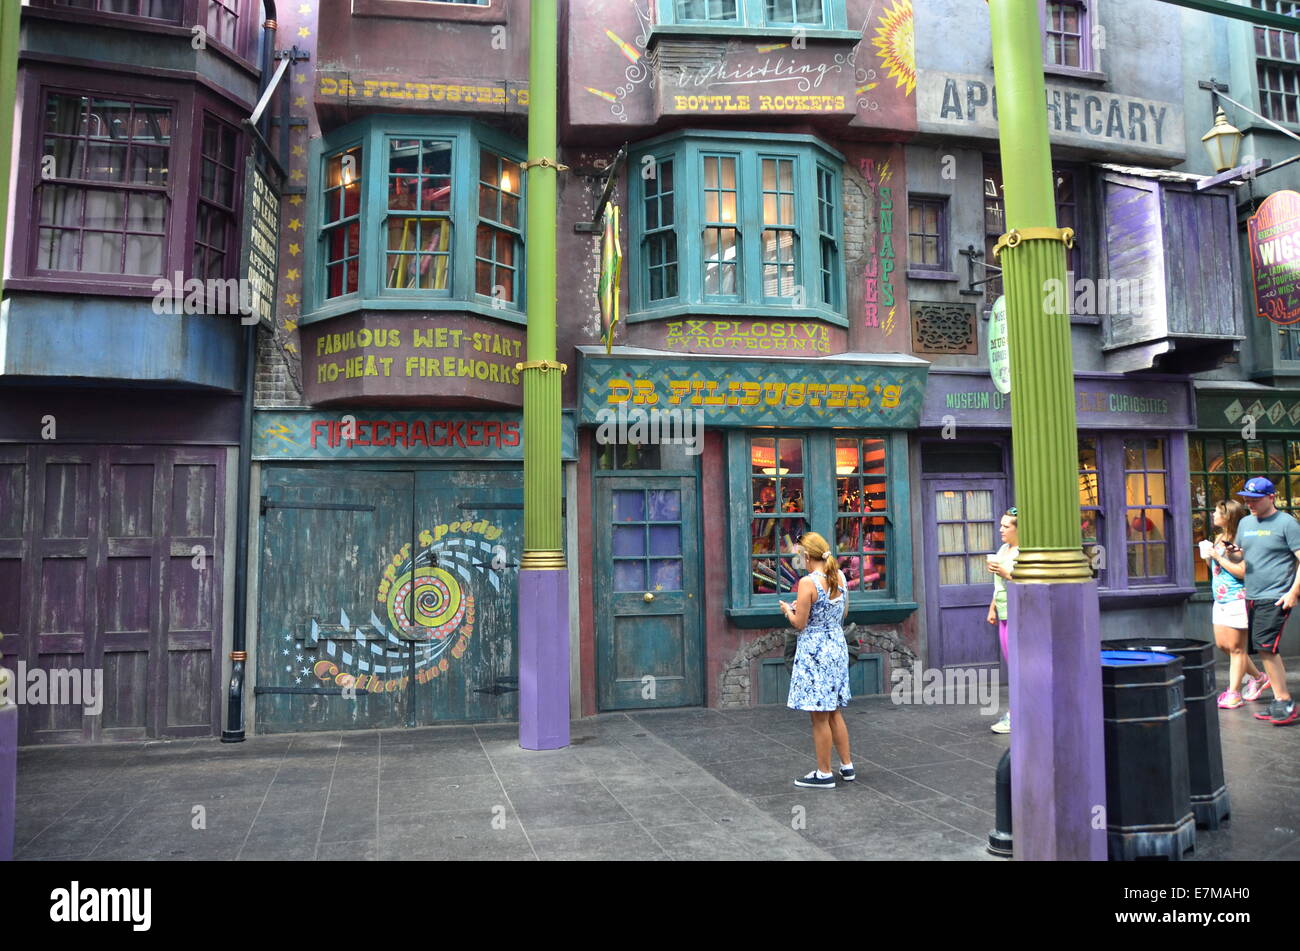 Dr Filibuster Ist In Diagon Gasse In Die Zauberwelt Von Harry Potter Expansion In Den Universal Studios Orlando Florida Usa Stockfotografie Alamy